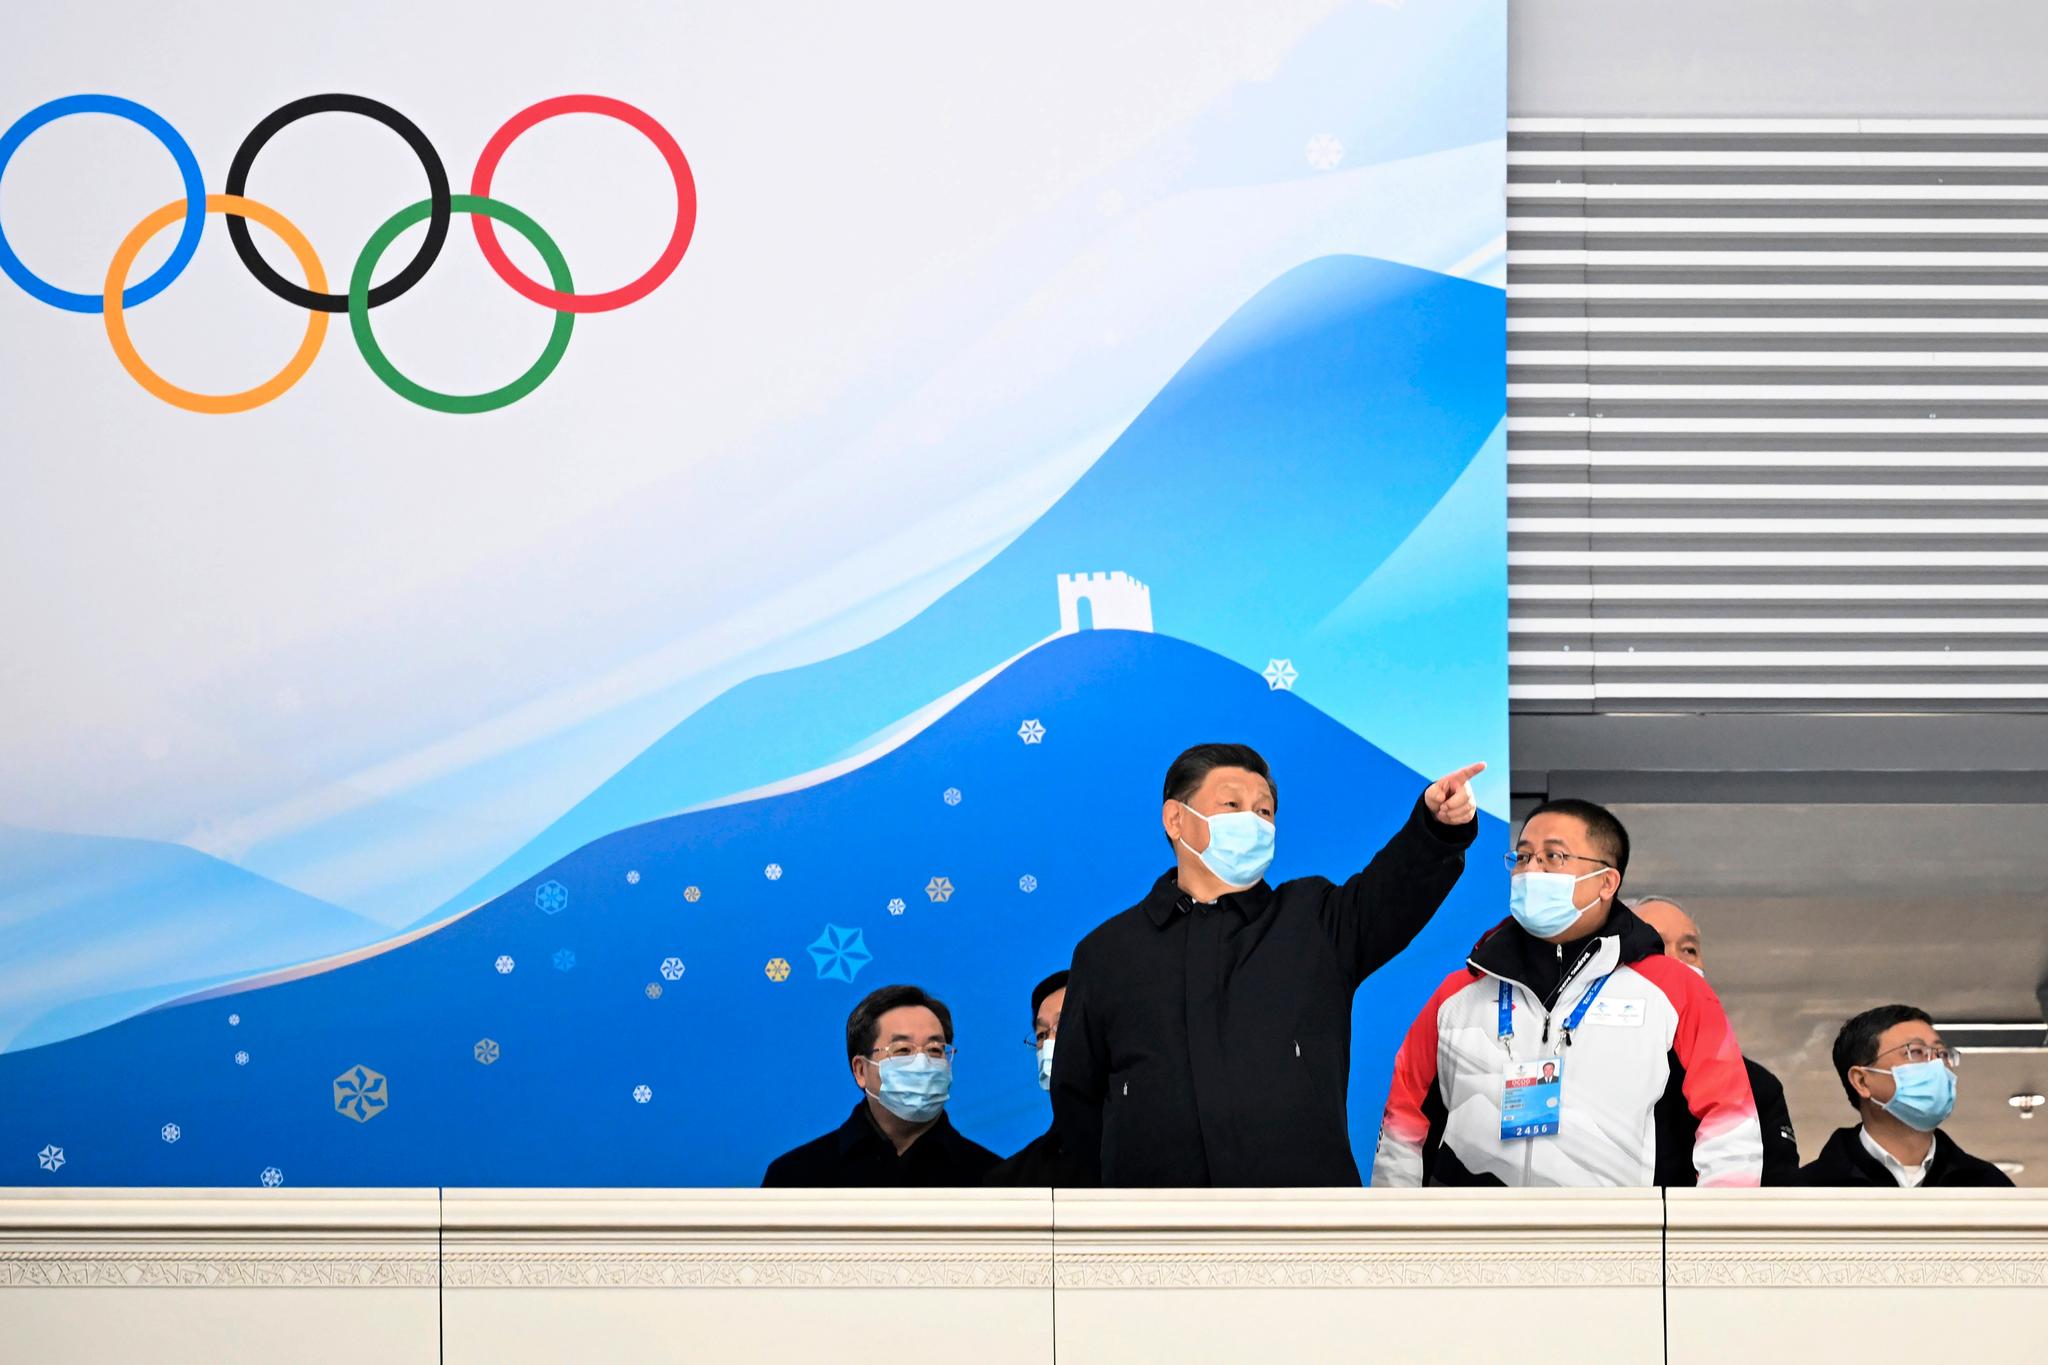 Kinas president Xi Jinping under et besøk til en skøytearena som skal brukes under vinter-OL. Bildet er fra 4. januar i år.